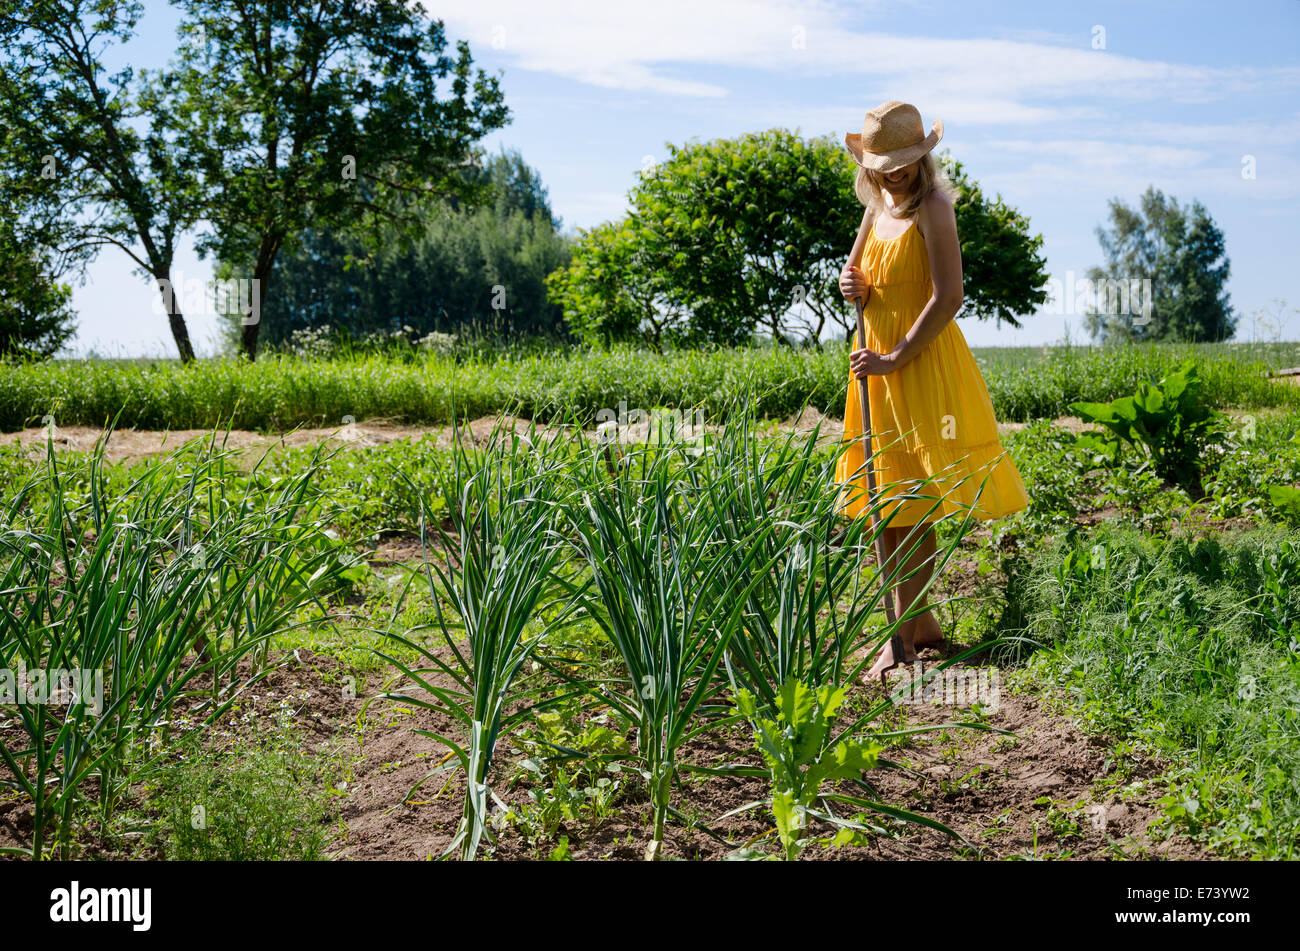 A piedi nudi giardiniere donna ragazza in abito e hat lavorare in giardino con la zappa tra Aglio e piante di pisello. Foto Stock